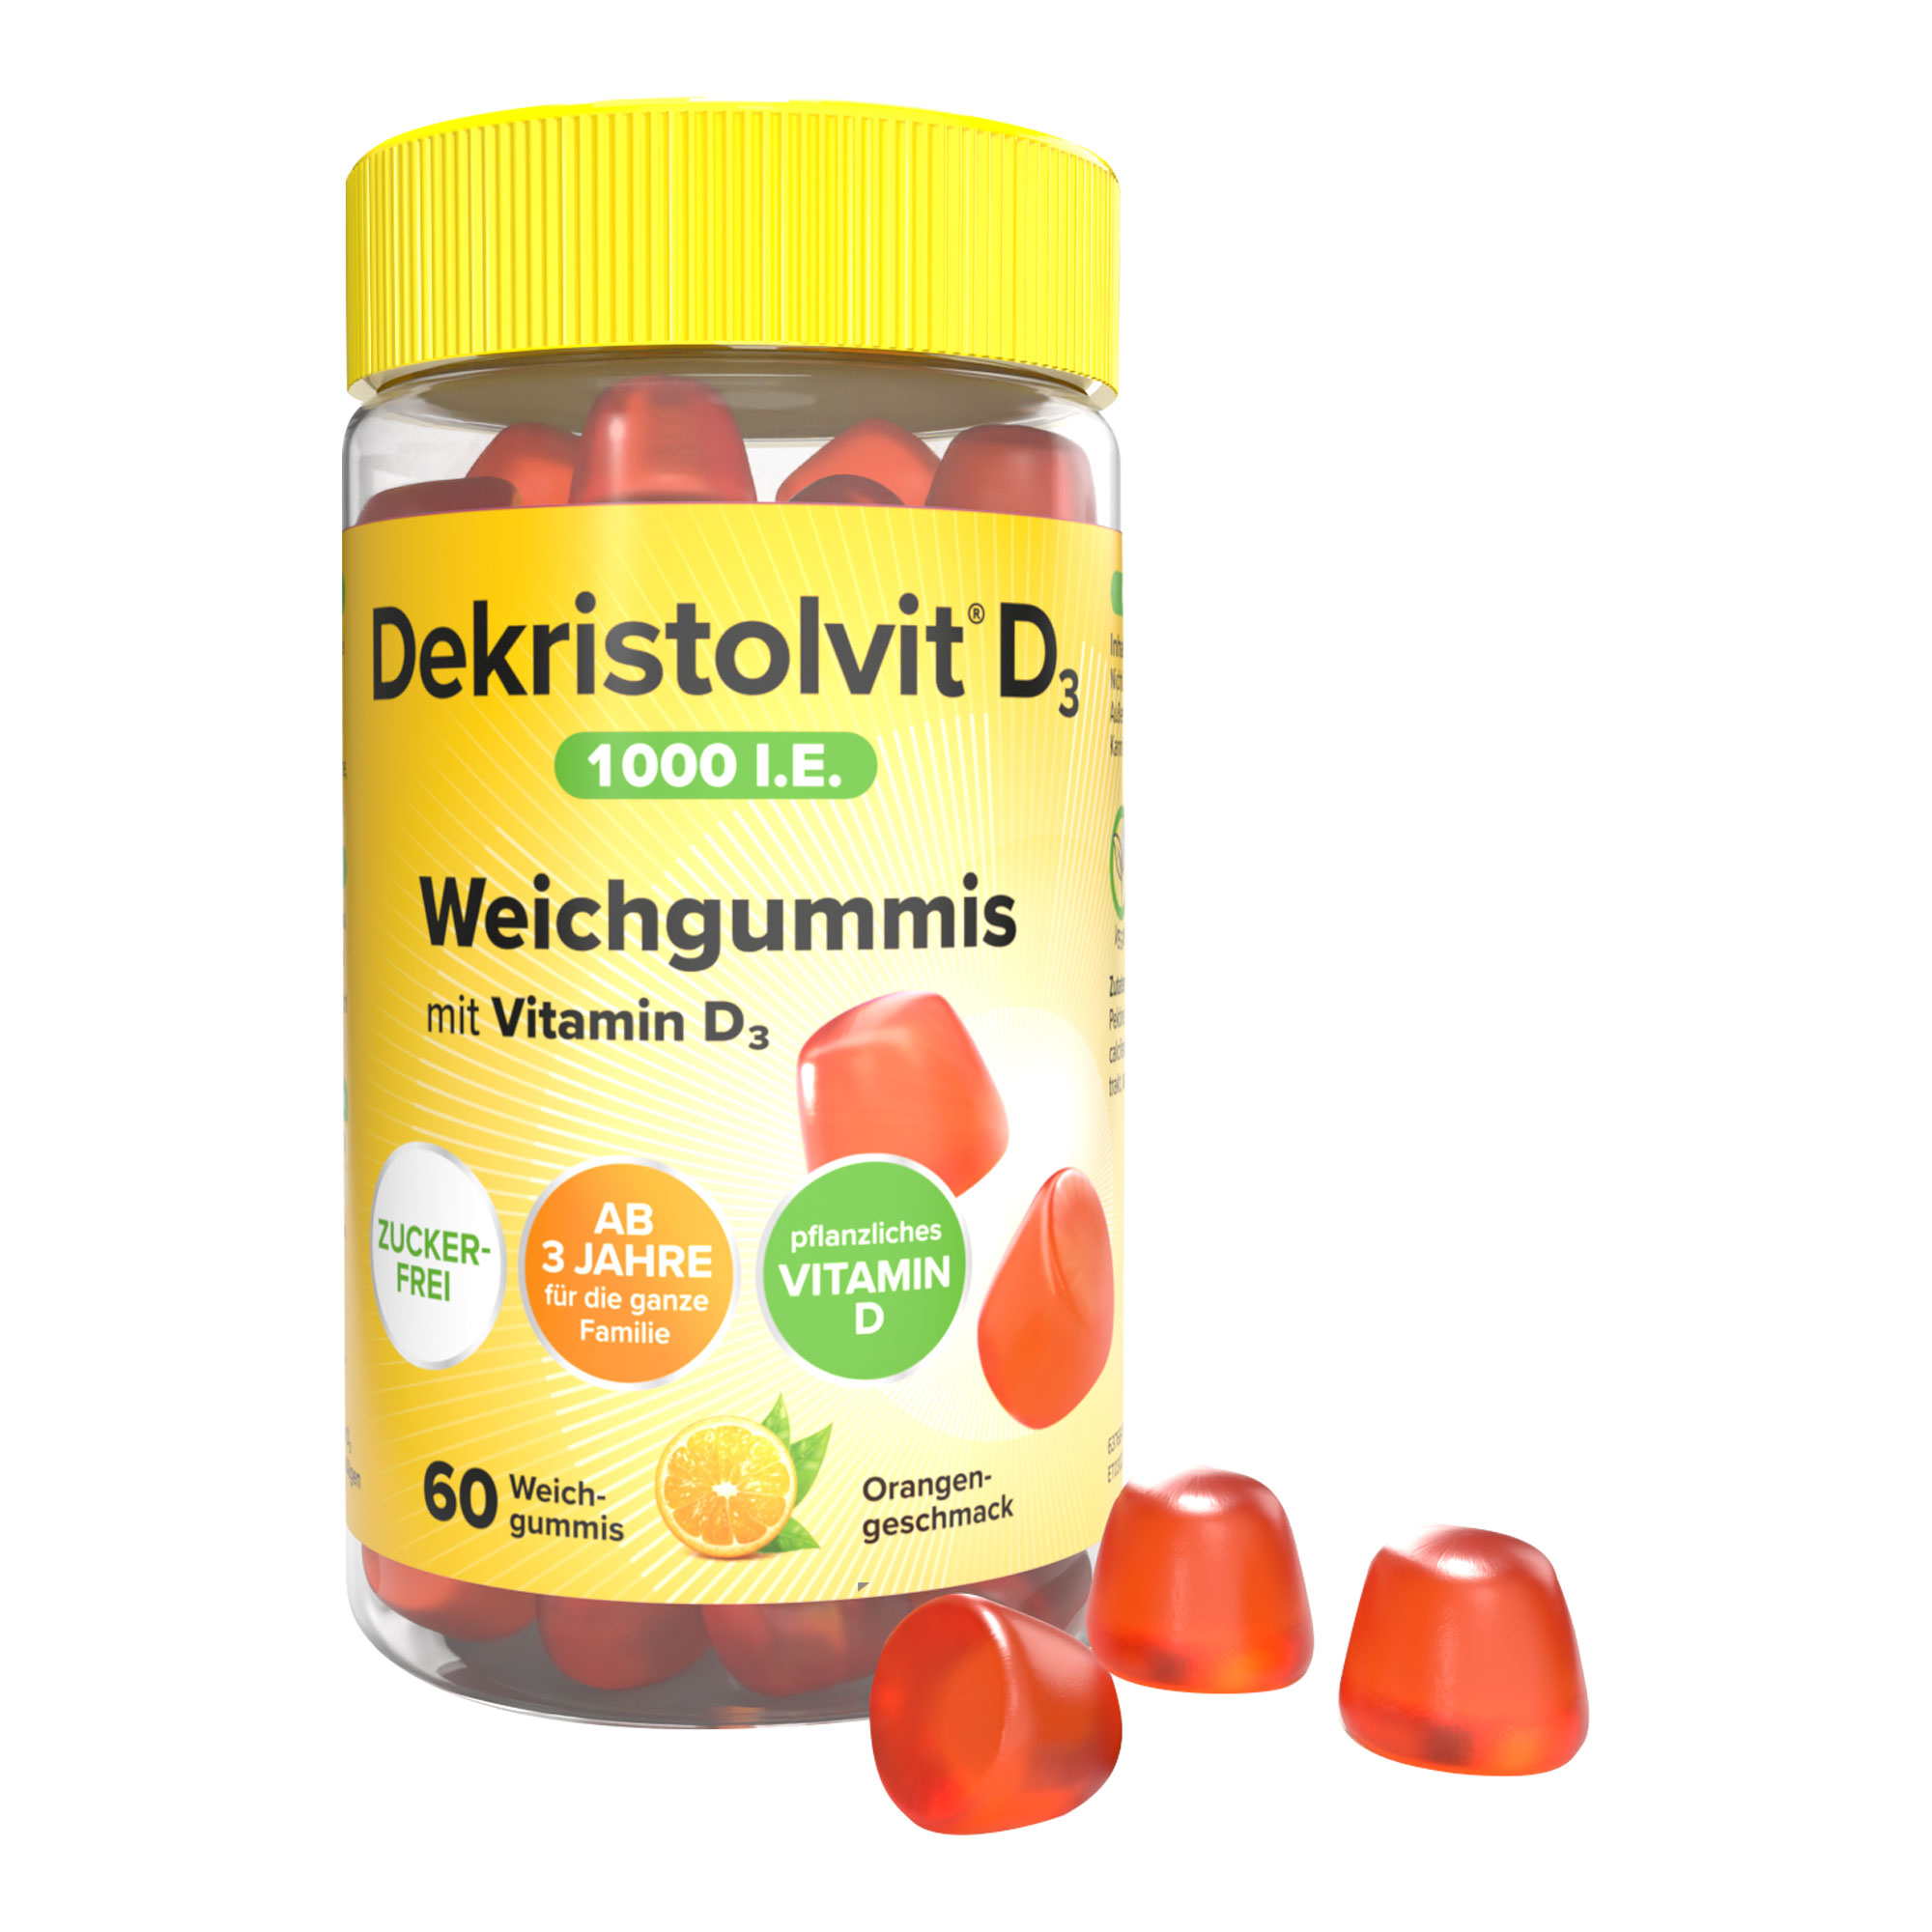 Vegane Weichgummis mit Vitamin D3 und Orangengeschmack. Für Kinder ab 3 Jahren und Erwachsene.